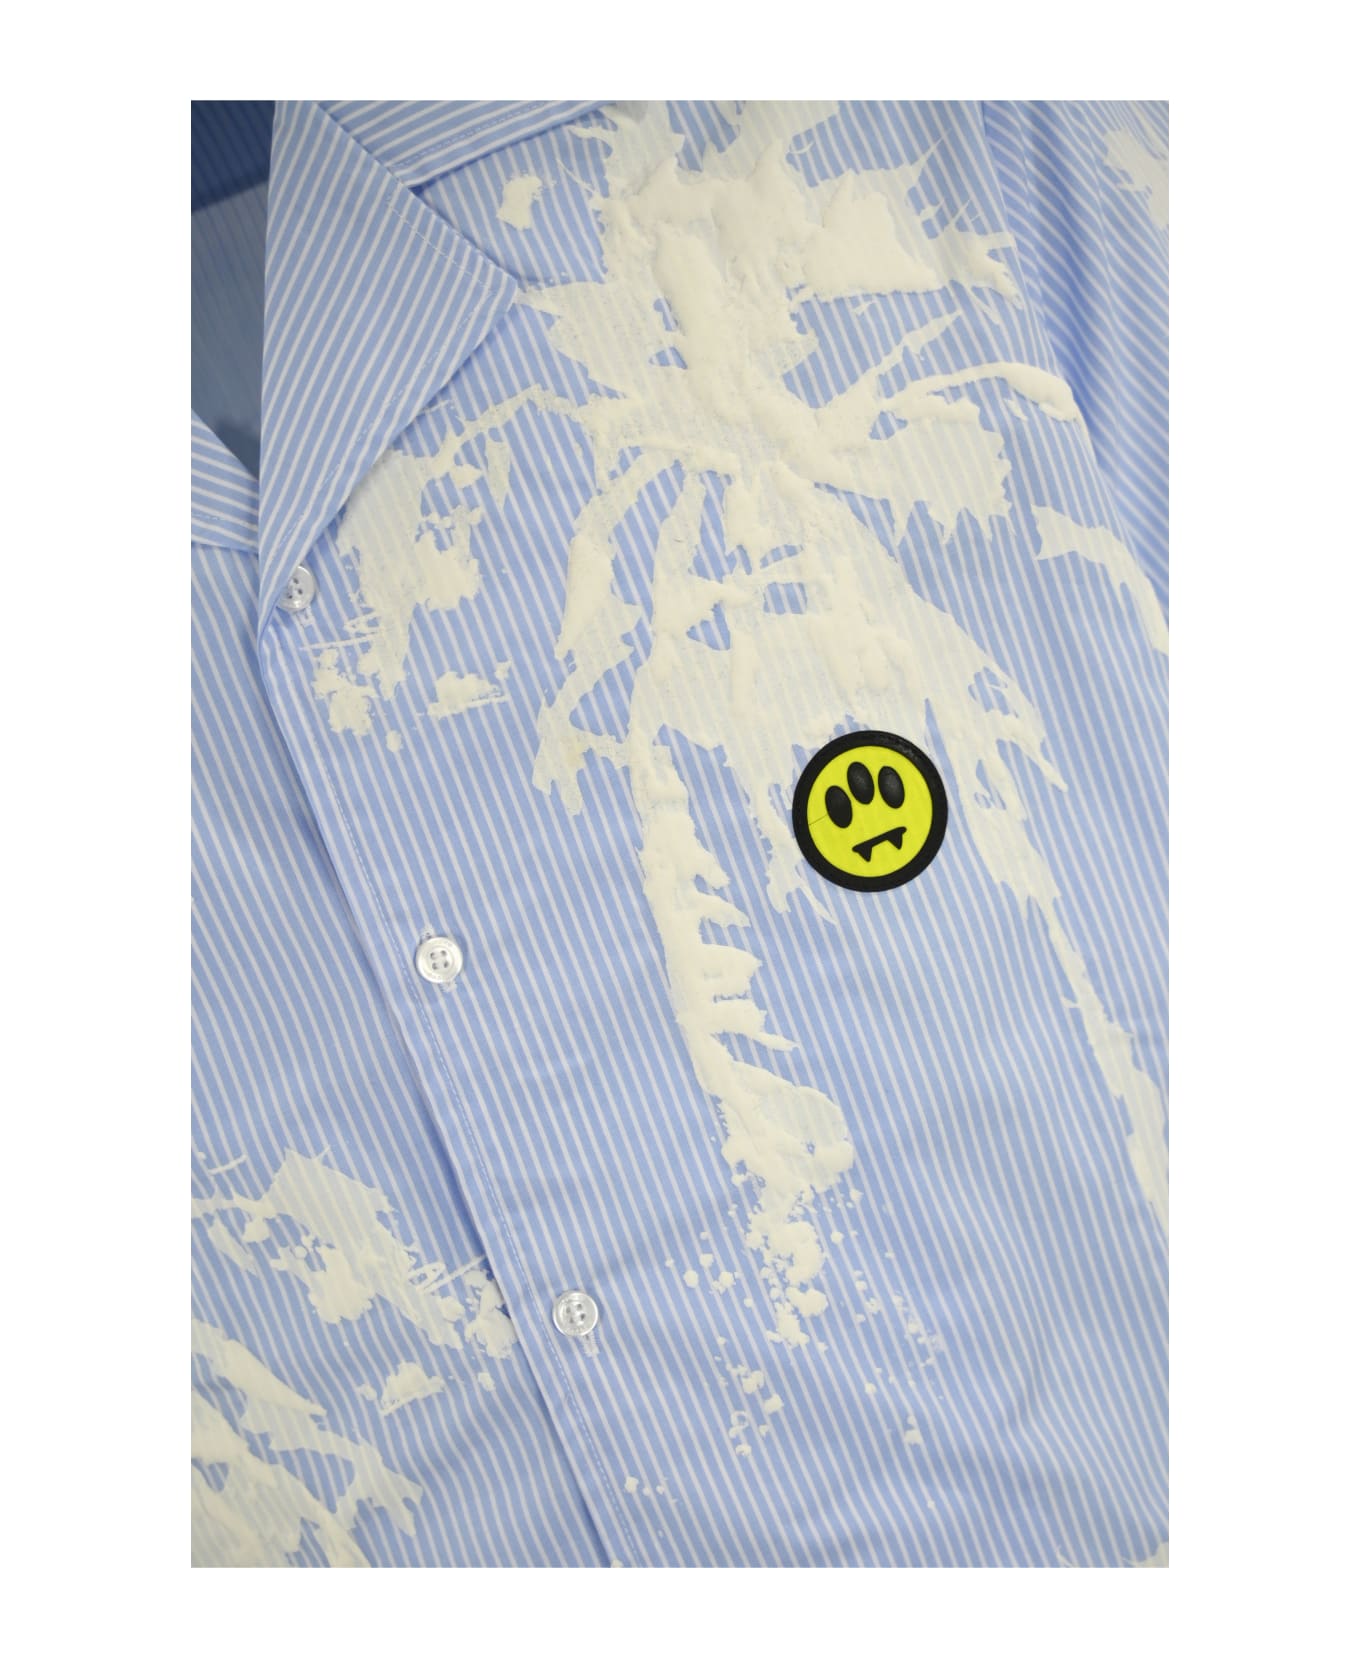 Barrow Camicia In Popeline Con Stampa Palm - Azzurro